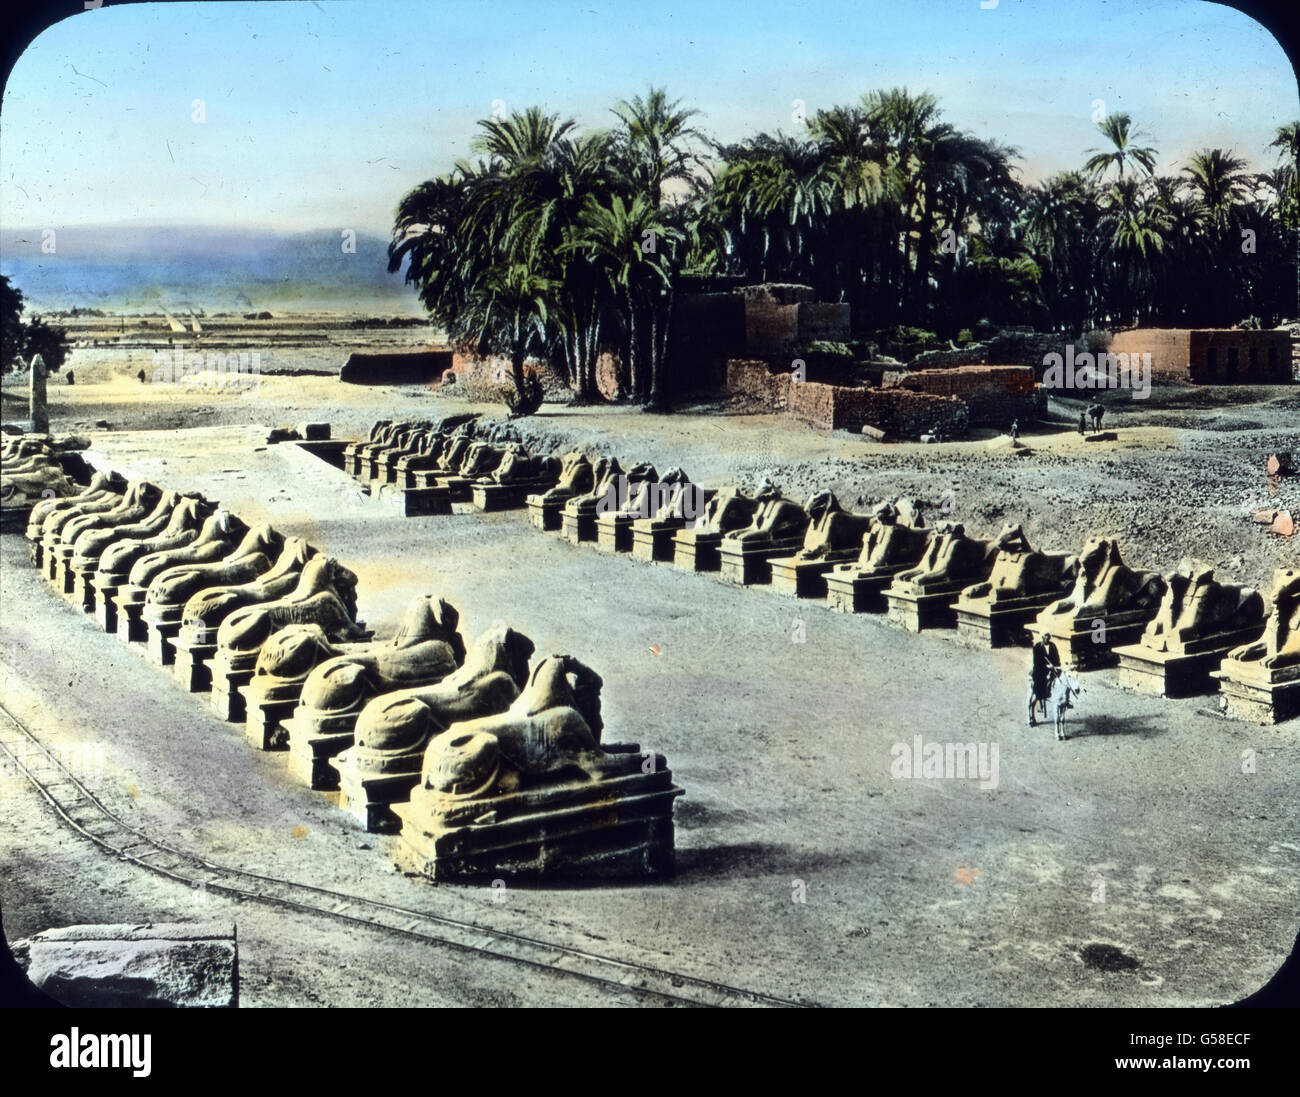 Die Orte Luxor und Karnak, die sich heute auf der Stätte des alten Theben erheben, sind eine einzige gewaltige Ruinenstätte. Gut erhalten hat sich diese einzigartige Sphinxallee, die zu einem Tempel in Karnak hinleitet. Wir haben aber nicht Zeit, in den interessanten Ruinen weiter zu forschen oder gar die Reliefs und Inschriften zu entziffern. Wir müssen auch vom Lande der Pharaonen Abschied nehmen, denn weit ist noch die Reise um die Welt und viel haben wir noch zu sehen. Trip around the world, Upper Egypt, Karnak, Sphinxes alley,  travel, journey, 1920s, 20th century, Archive, Carl Simon, hi Stock Photo